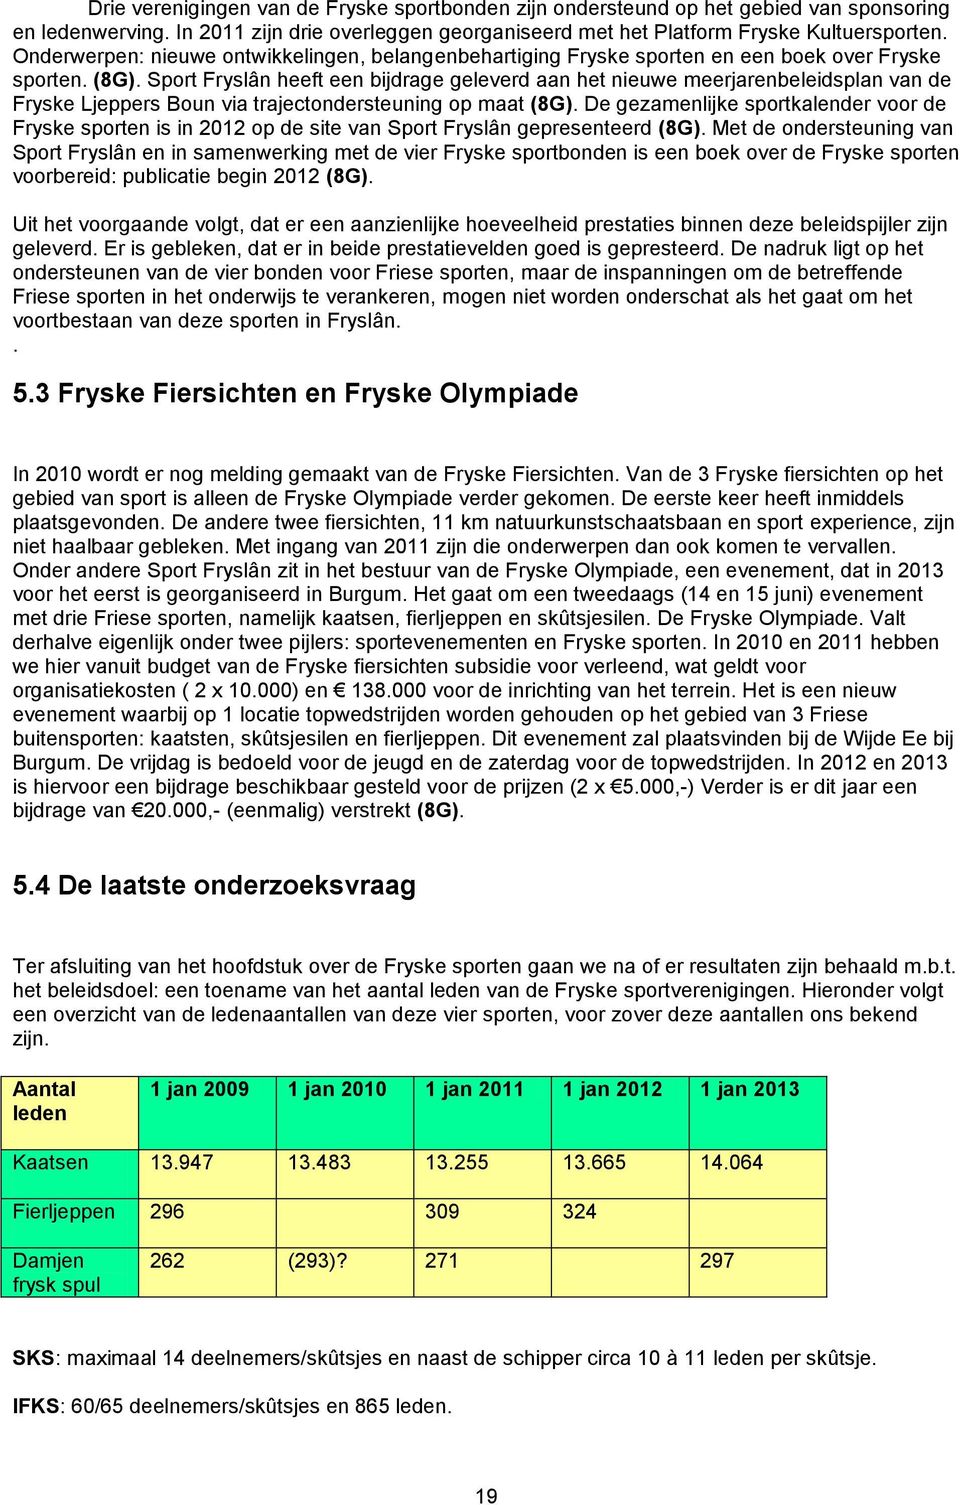 Sport Fryslân heeft een bijdrage geleverd aan het nieuwe meerjarenbeleidsplan van de Fryske Ljeppers Boun via trajectondersteuning op maat (8G).